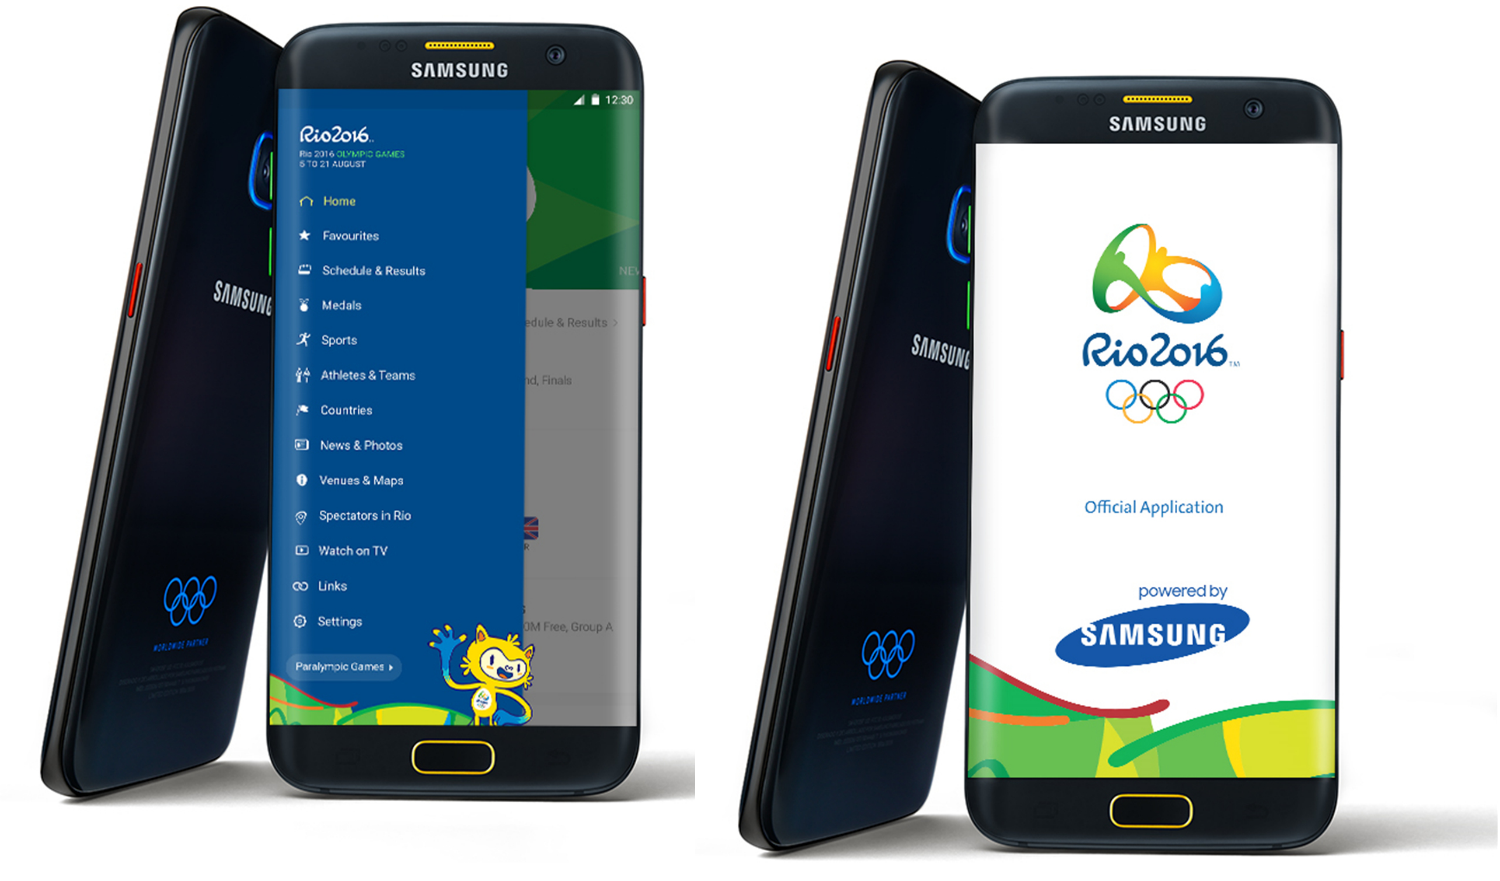 El precio del Samsung Galaxy S7 Edge Olympic Games Limited Edition en España - Características y fecha de lanzamiento